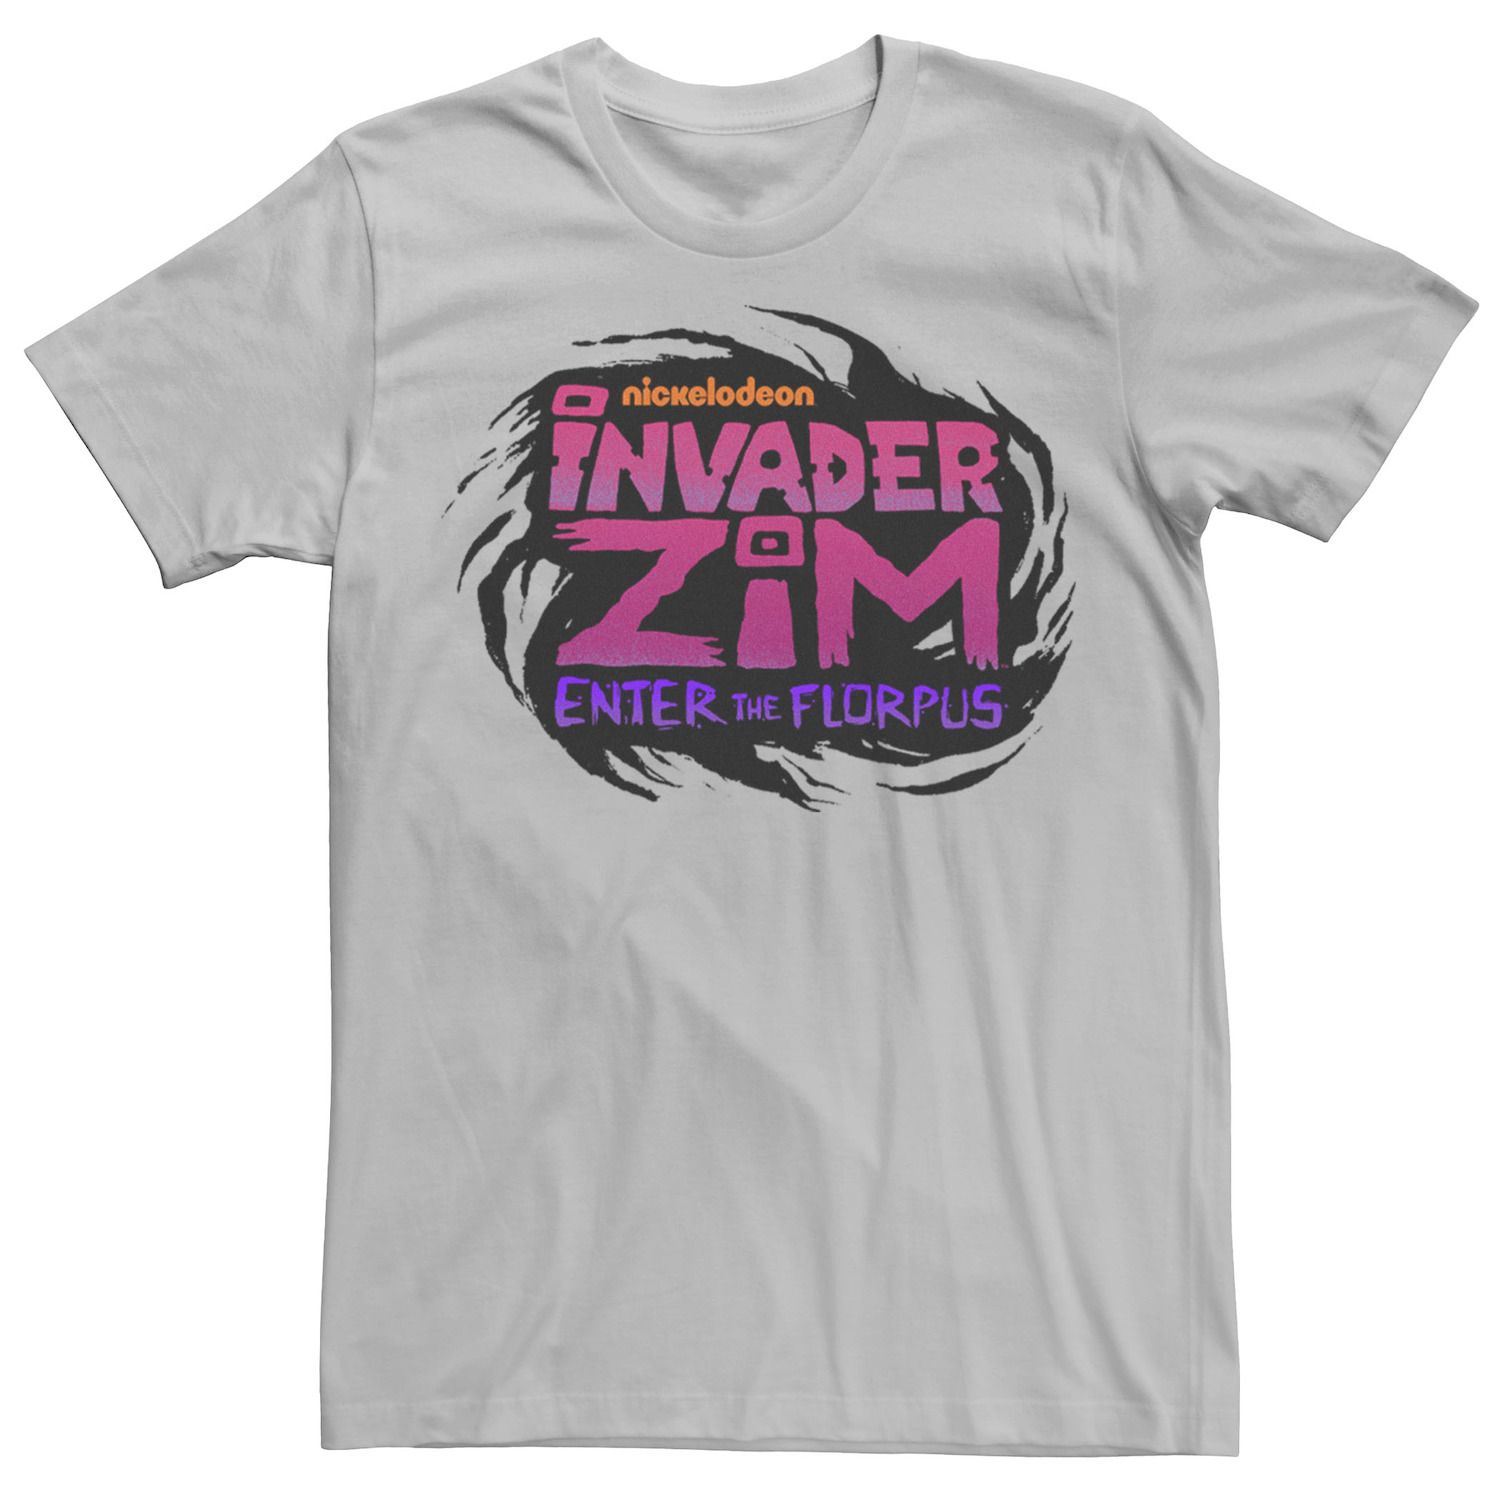 Мужская футболка с логотипом Nickelodeon Invader Zim Enter Florpus и графический цветок Licensed Character, серебристый мужская футболка nickelodeon 90 е это сплошной графический рисунок licensed character